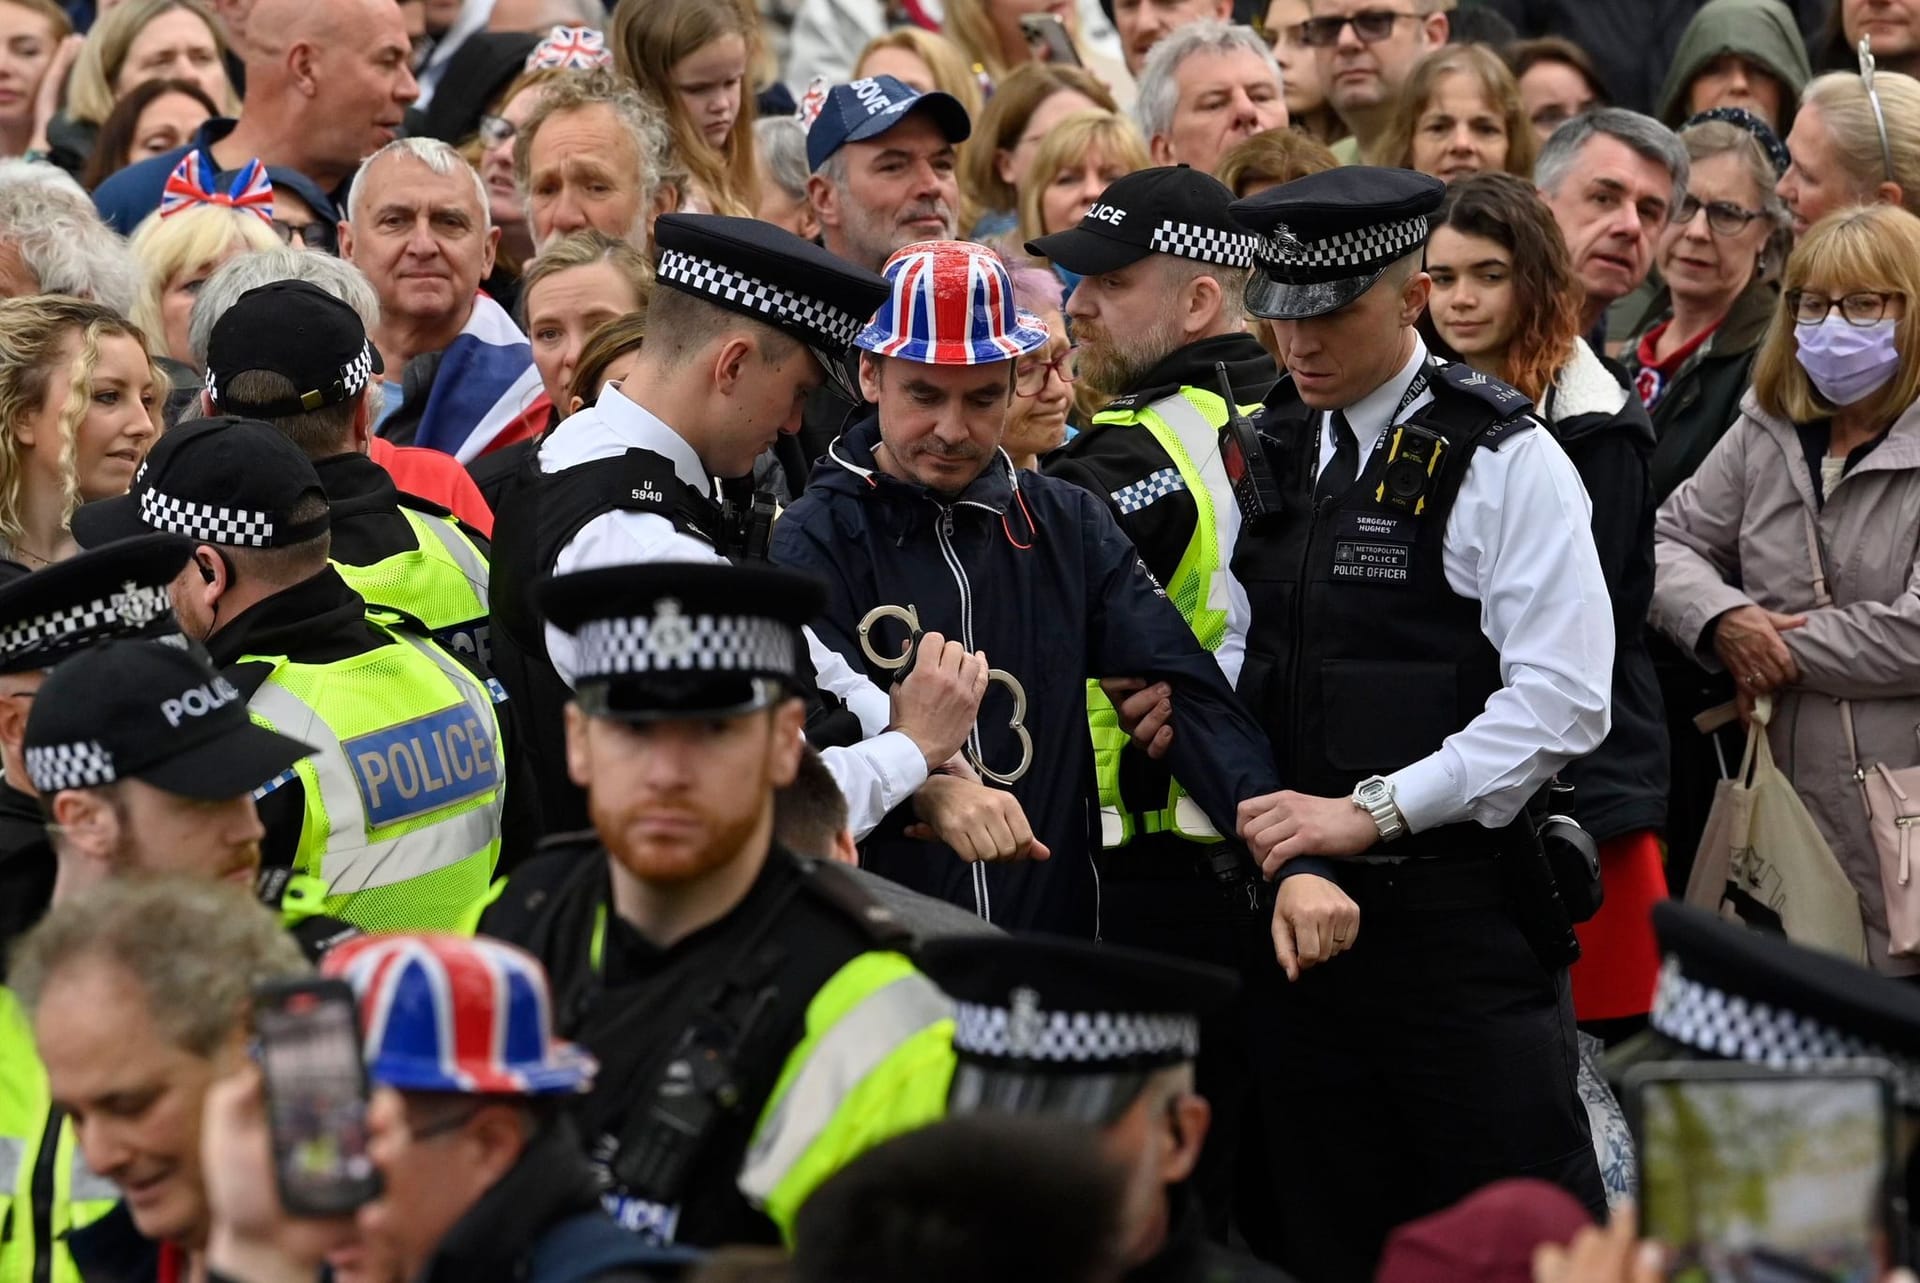 Ein Demonstrant wird am Krönungstag in London festgenommen: Die Polizei bereut ihr Vorgehen nach eigener Aussage.